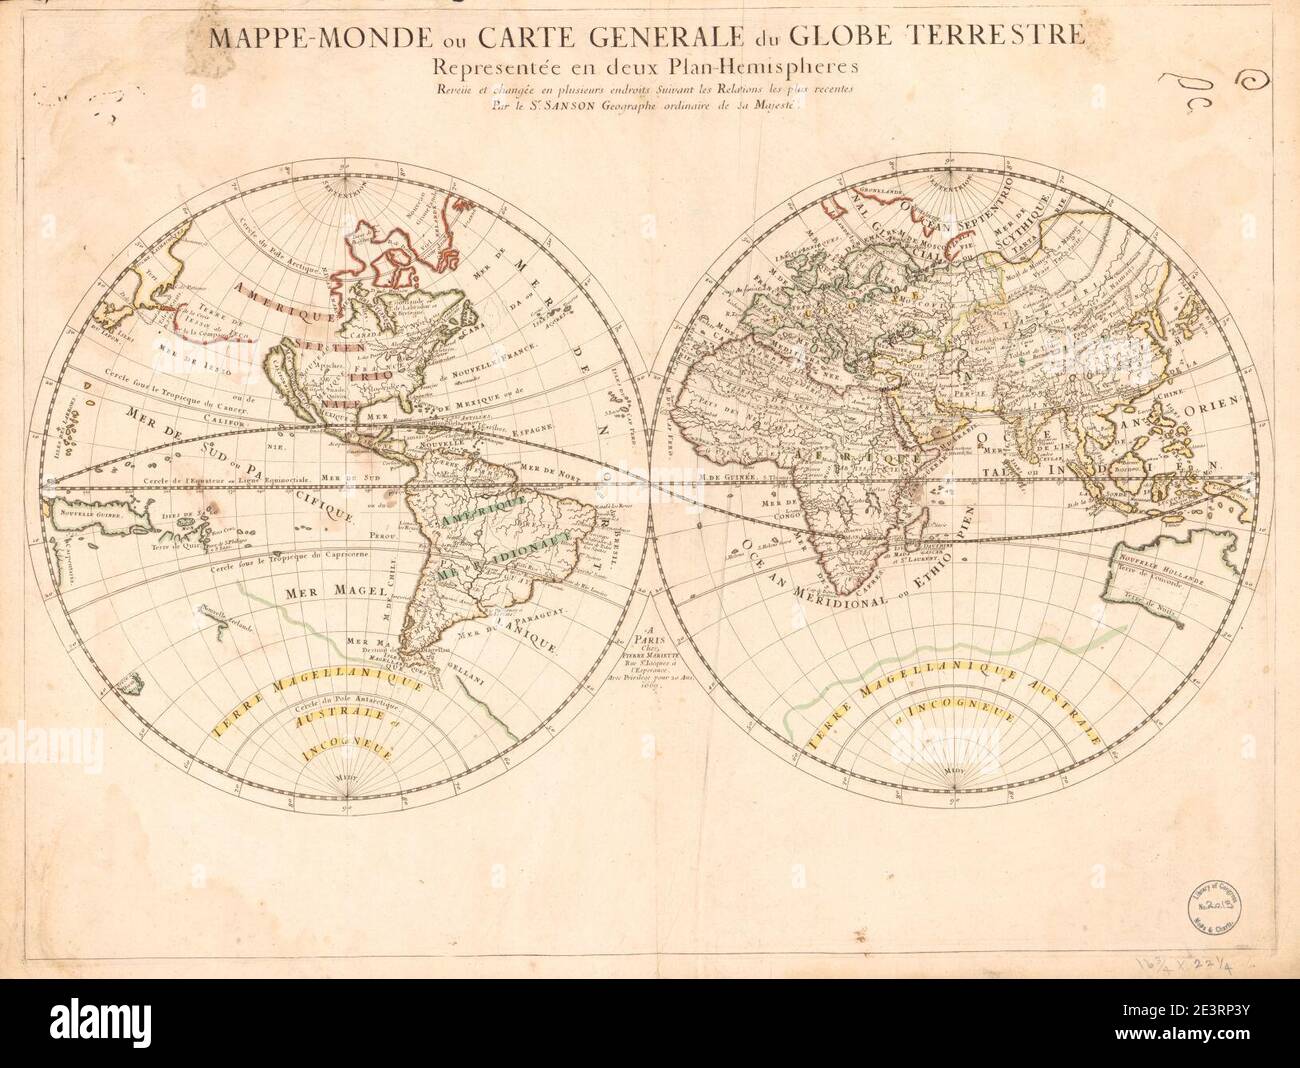 Mappe-monde, ou carte generale du globe terrestre - representée en deux plan-hemispheres - reveiie et changée en plusieurs endroits suivant les relations les plus recentes Stock Photo